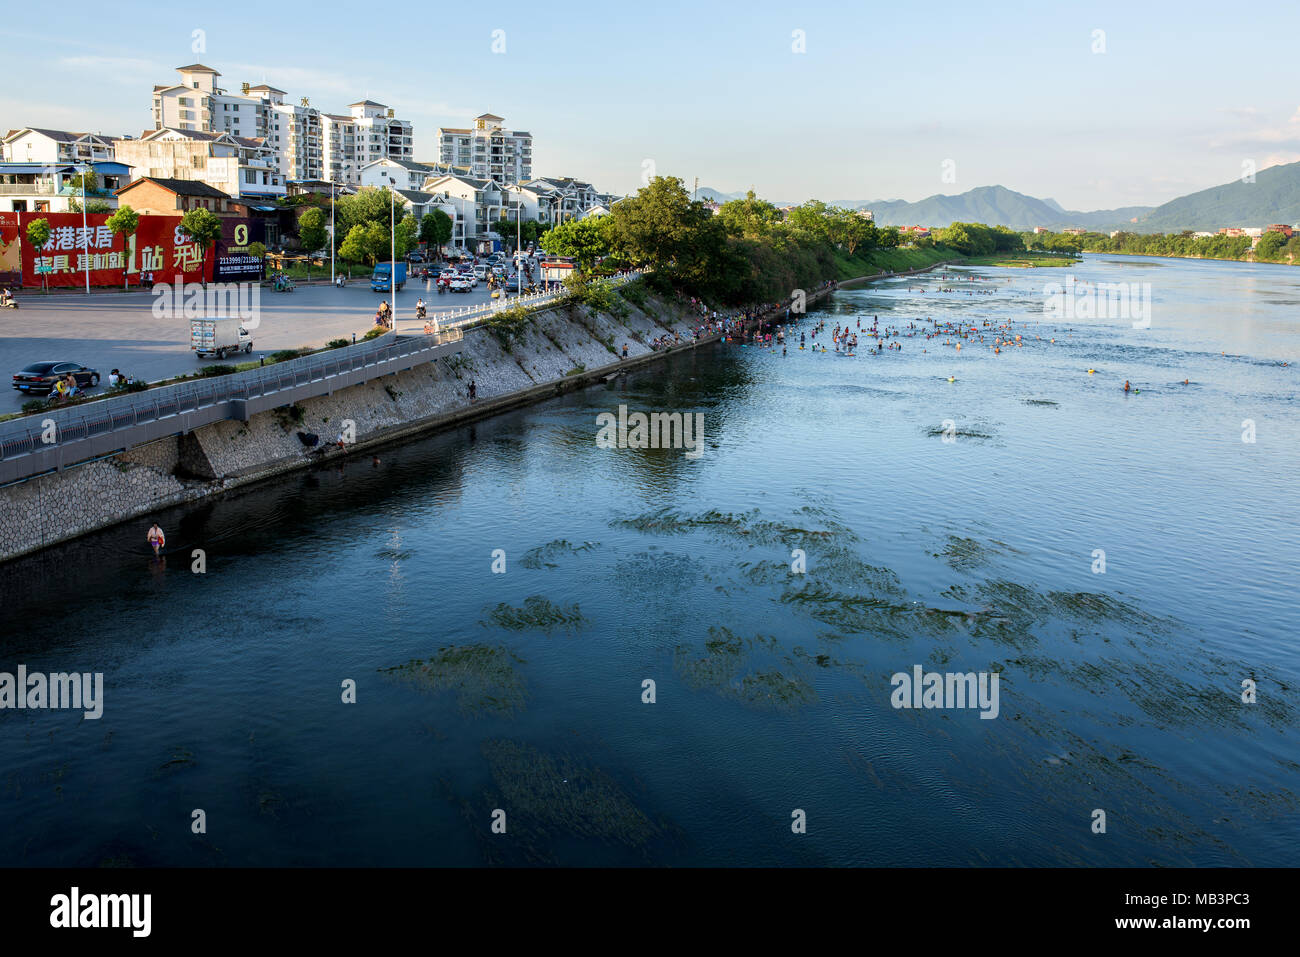 Li Jiang river in Guilin City Stock Photo